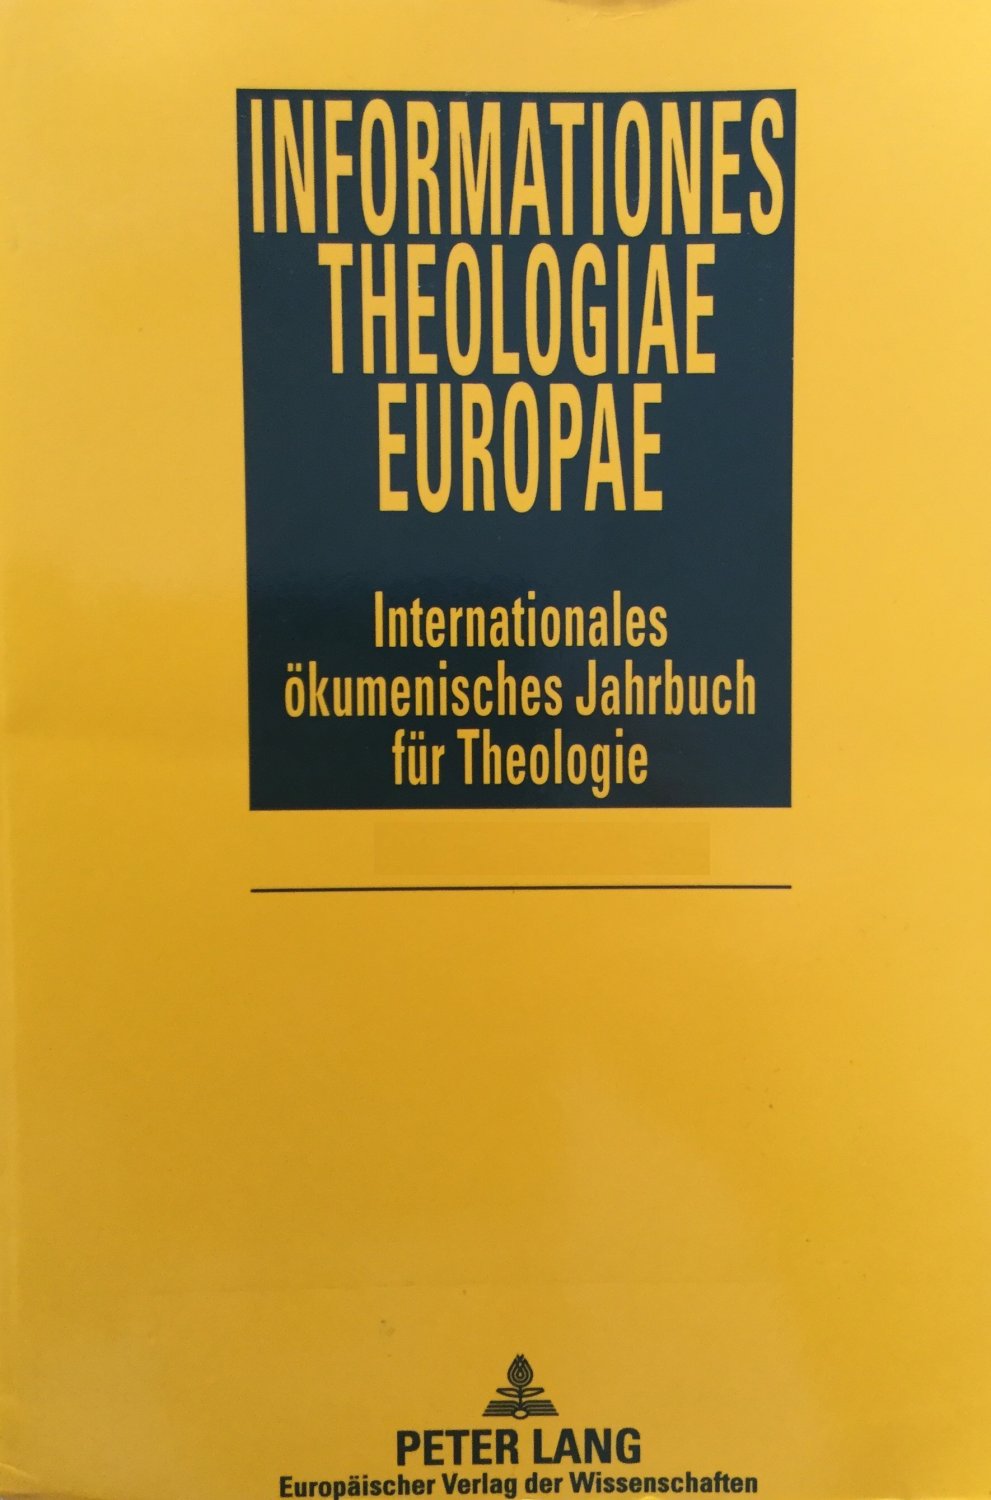 Informationes Theologiae Europae. Internationales ökumenisches Jahrbuch für Theologie